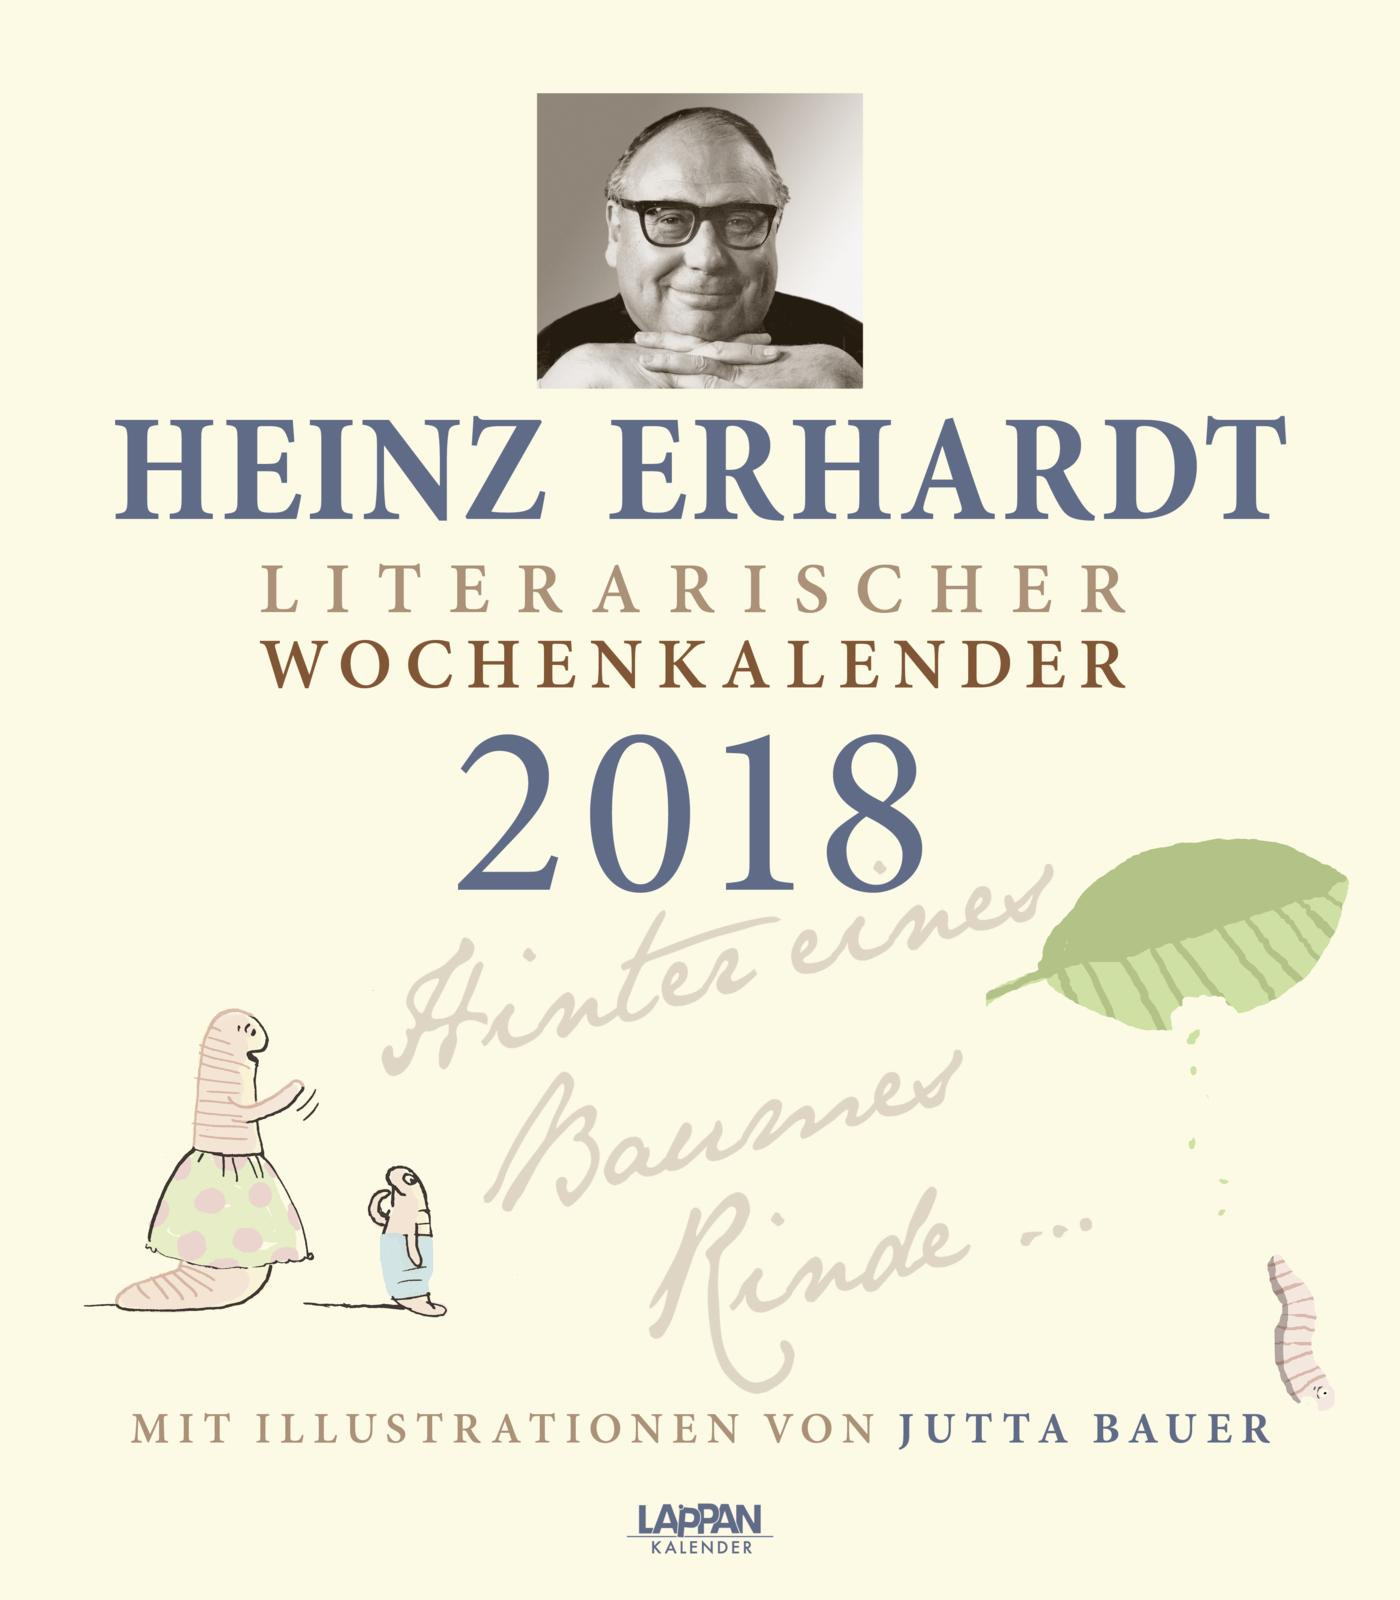 Hochzeit Heinz Erhardt
 Elegant Goldene Hochzeit Gedicht Heinz Erhardt – Schmuck